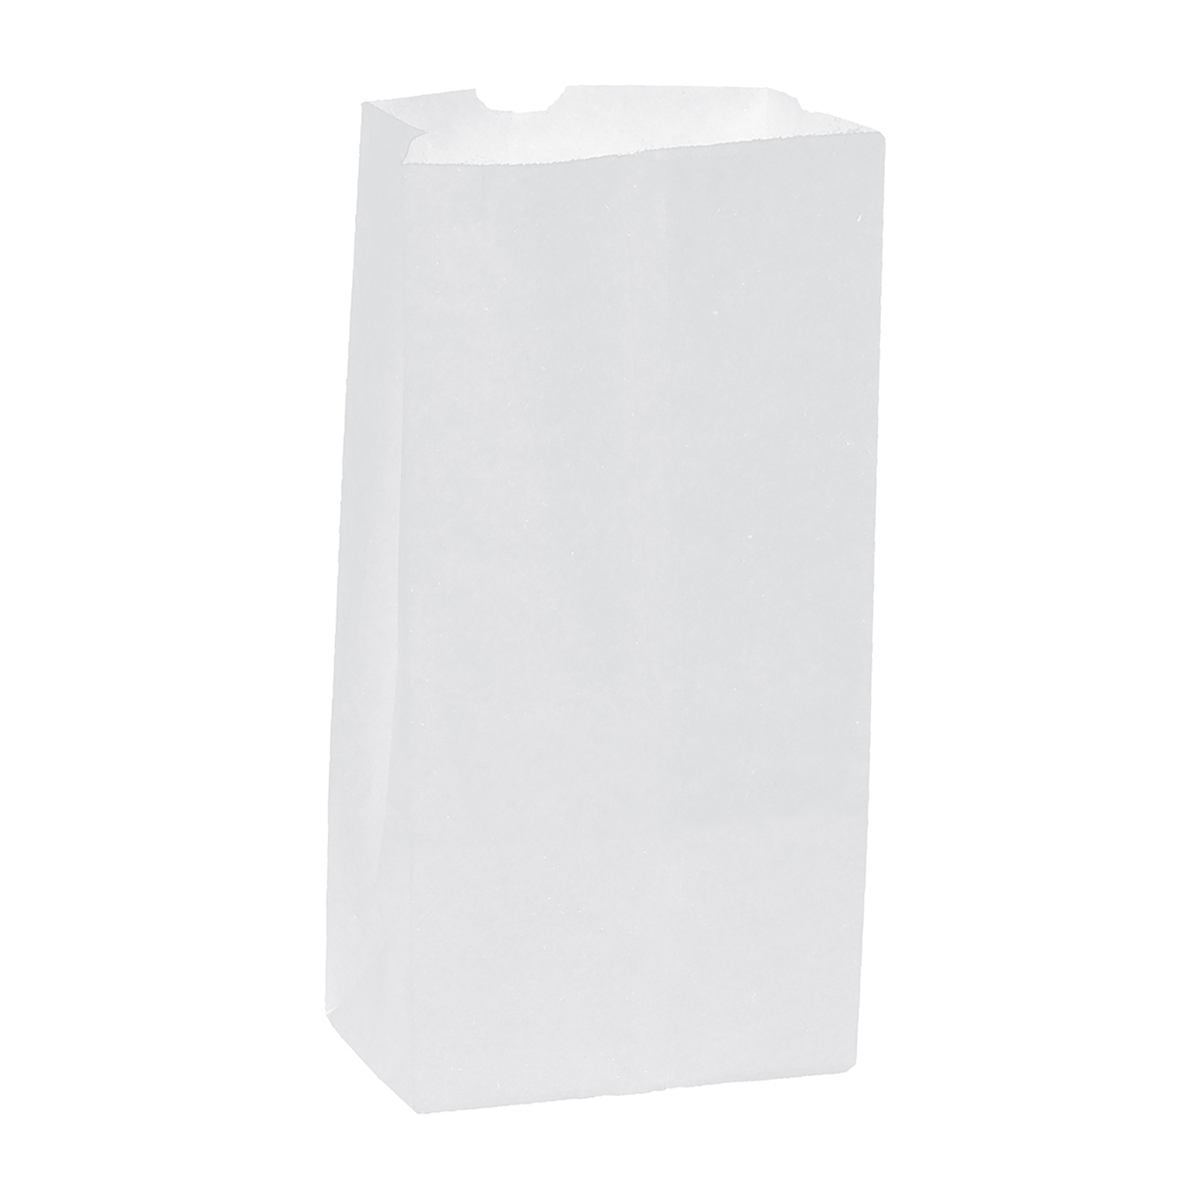 White Kraft White Paper Grocery Bag (4.25"W x 2.375"G x 8.188"H)